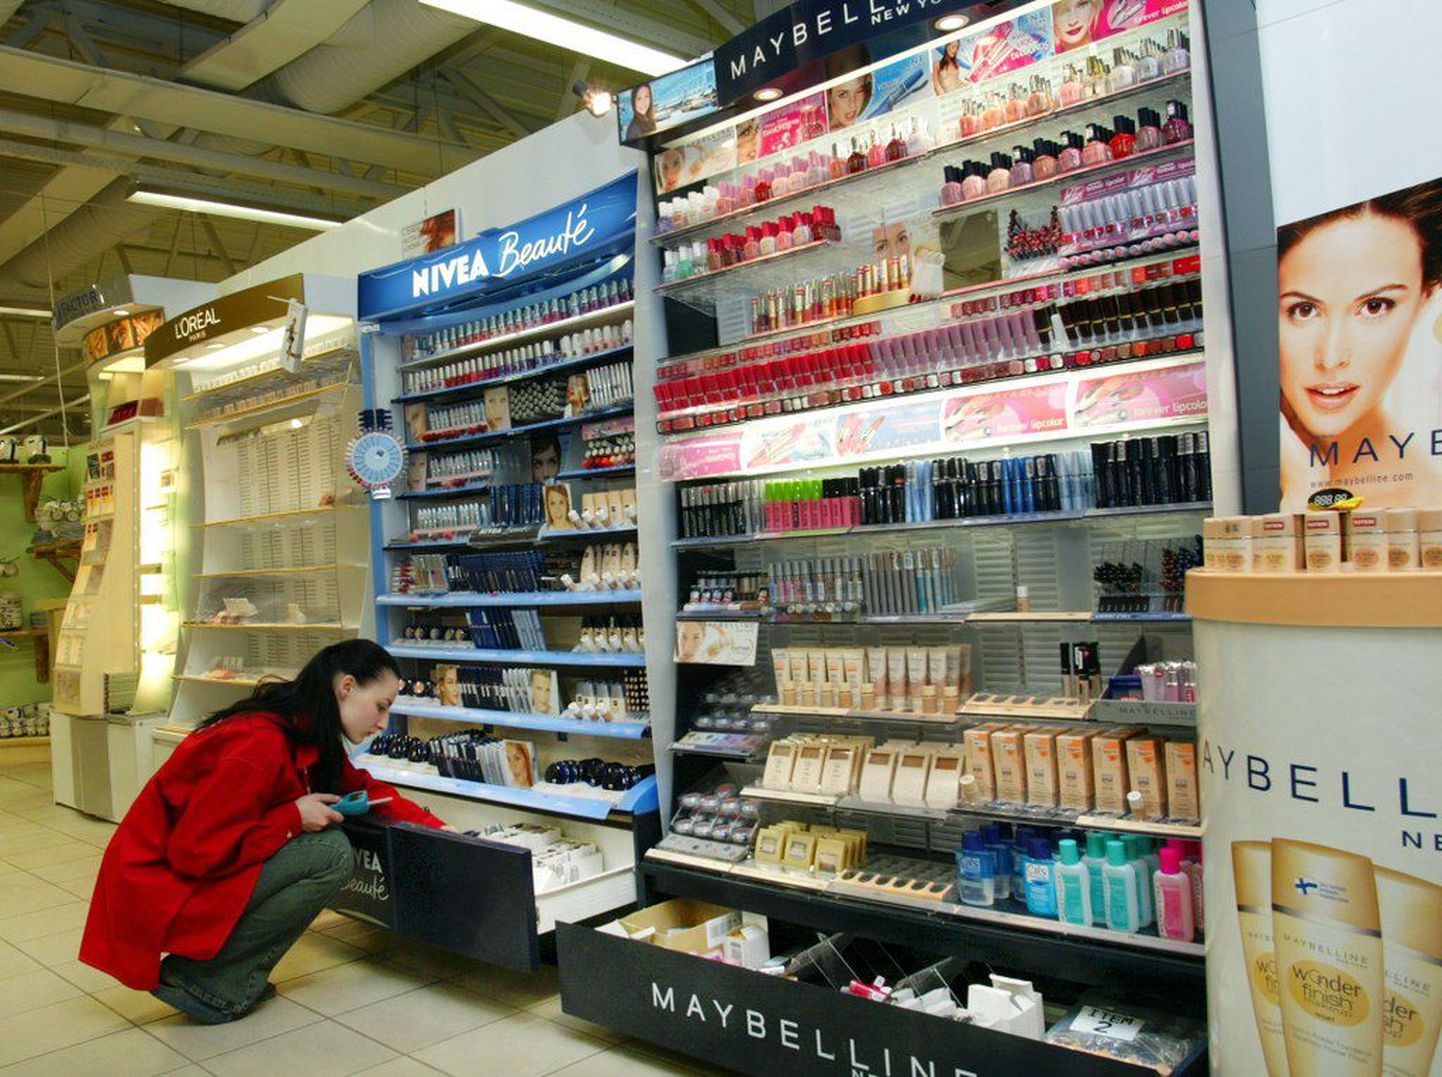 Palju varastatakse poodidest kosmeetikat.